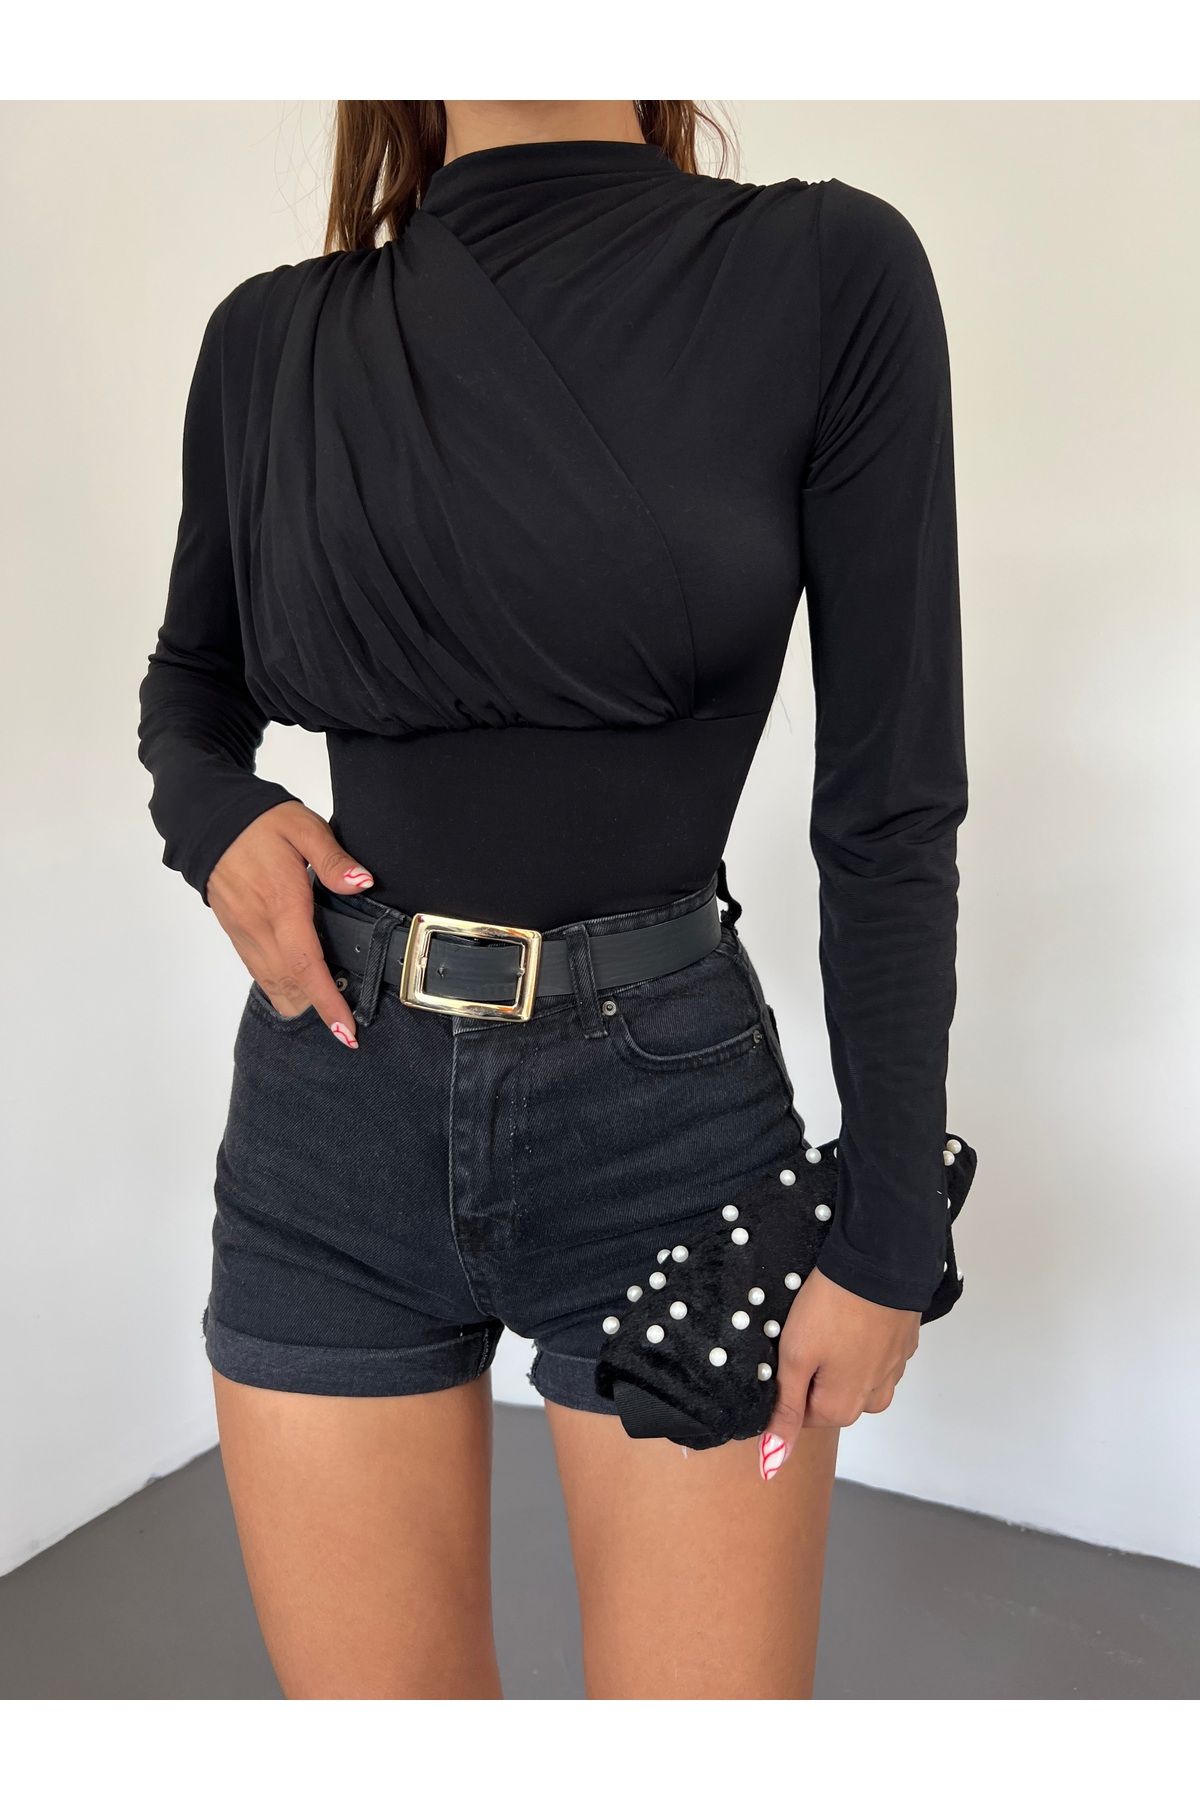 Fav Style Women's Front Gather Detailed High Collar Long Sleeve Bodysuit  Blouse Black - Trendyol